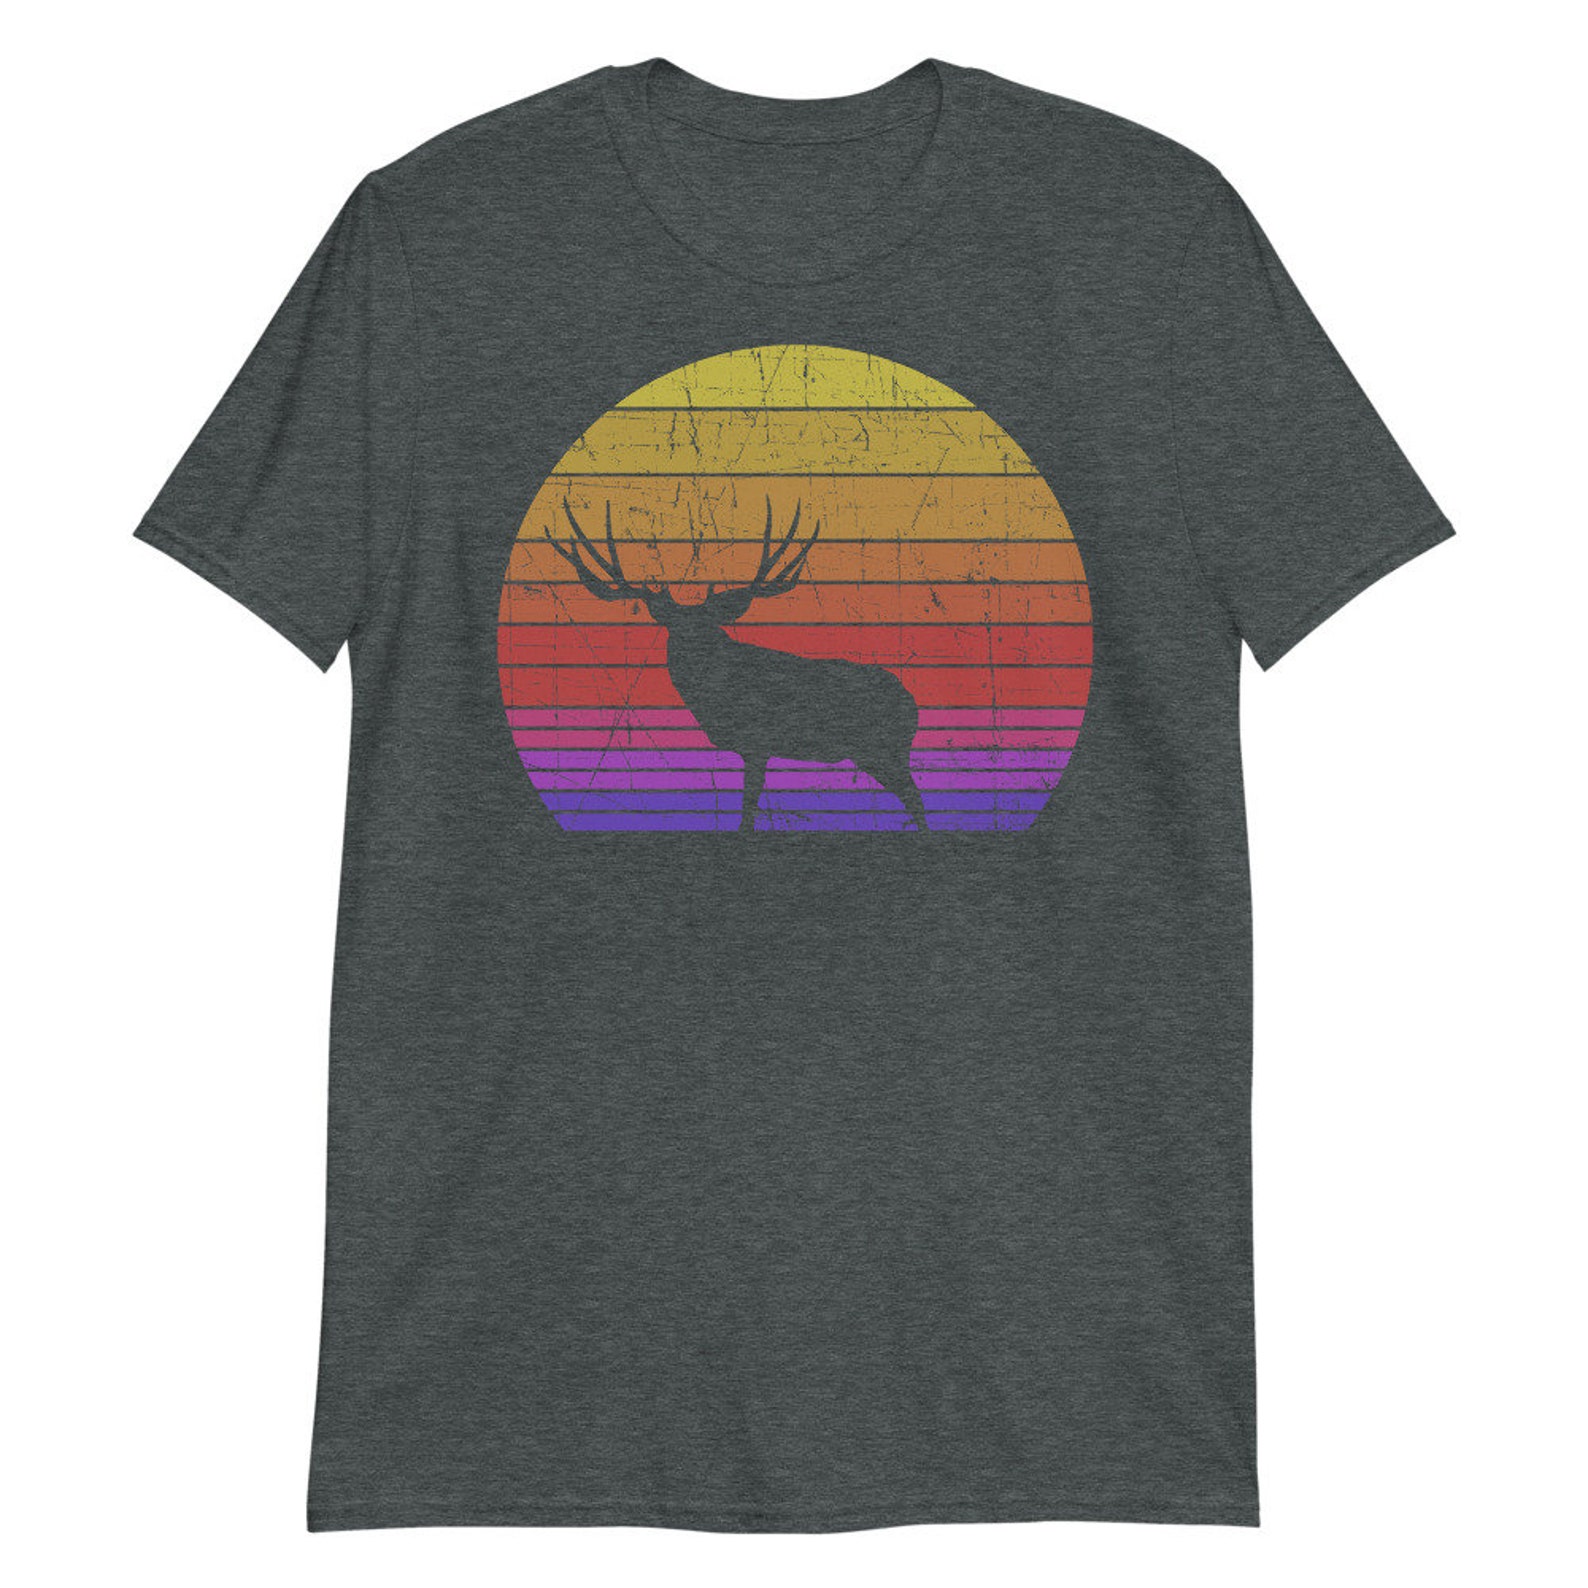 Mule deer shirts